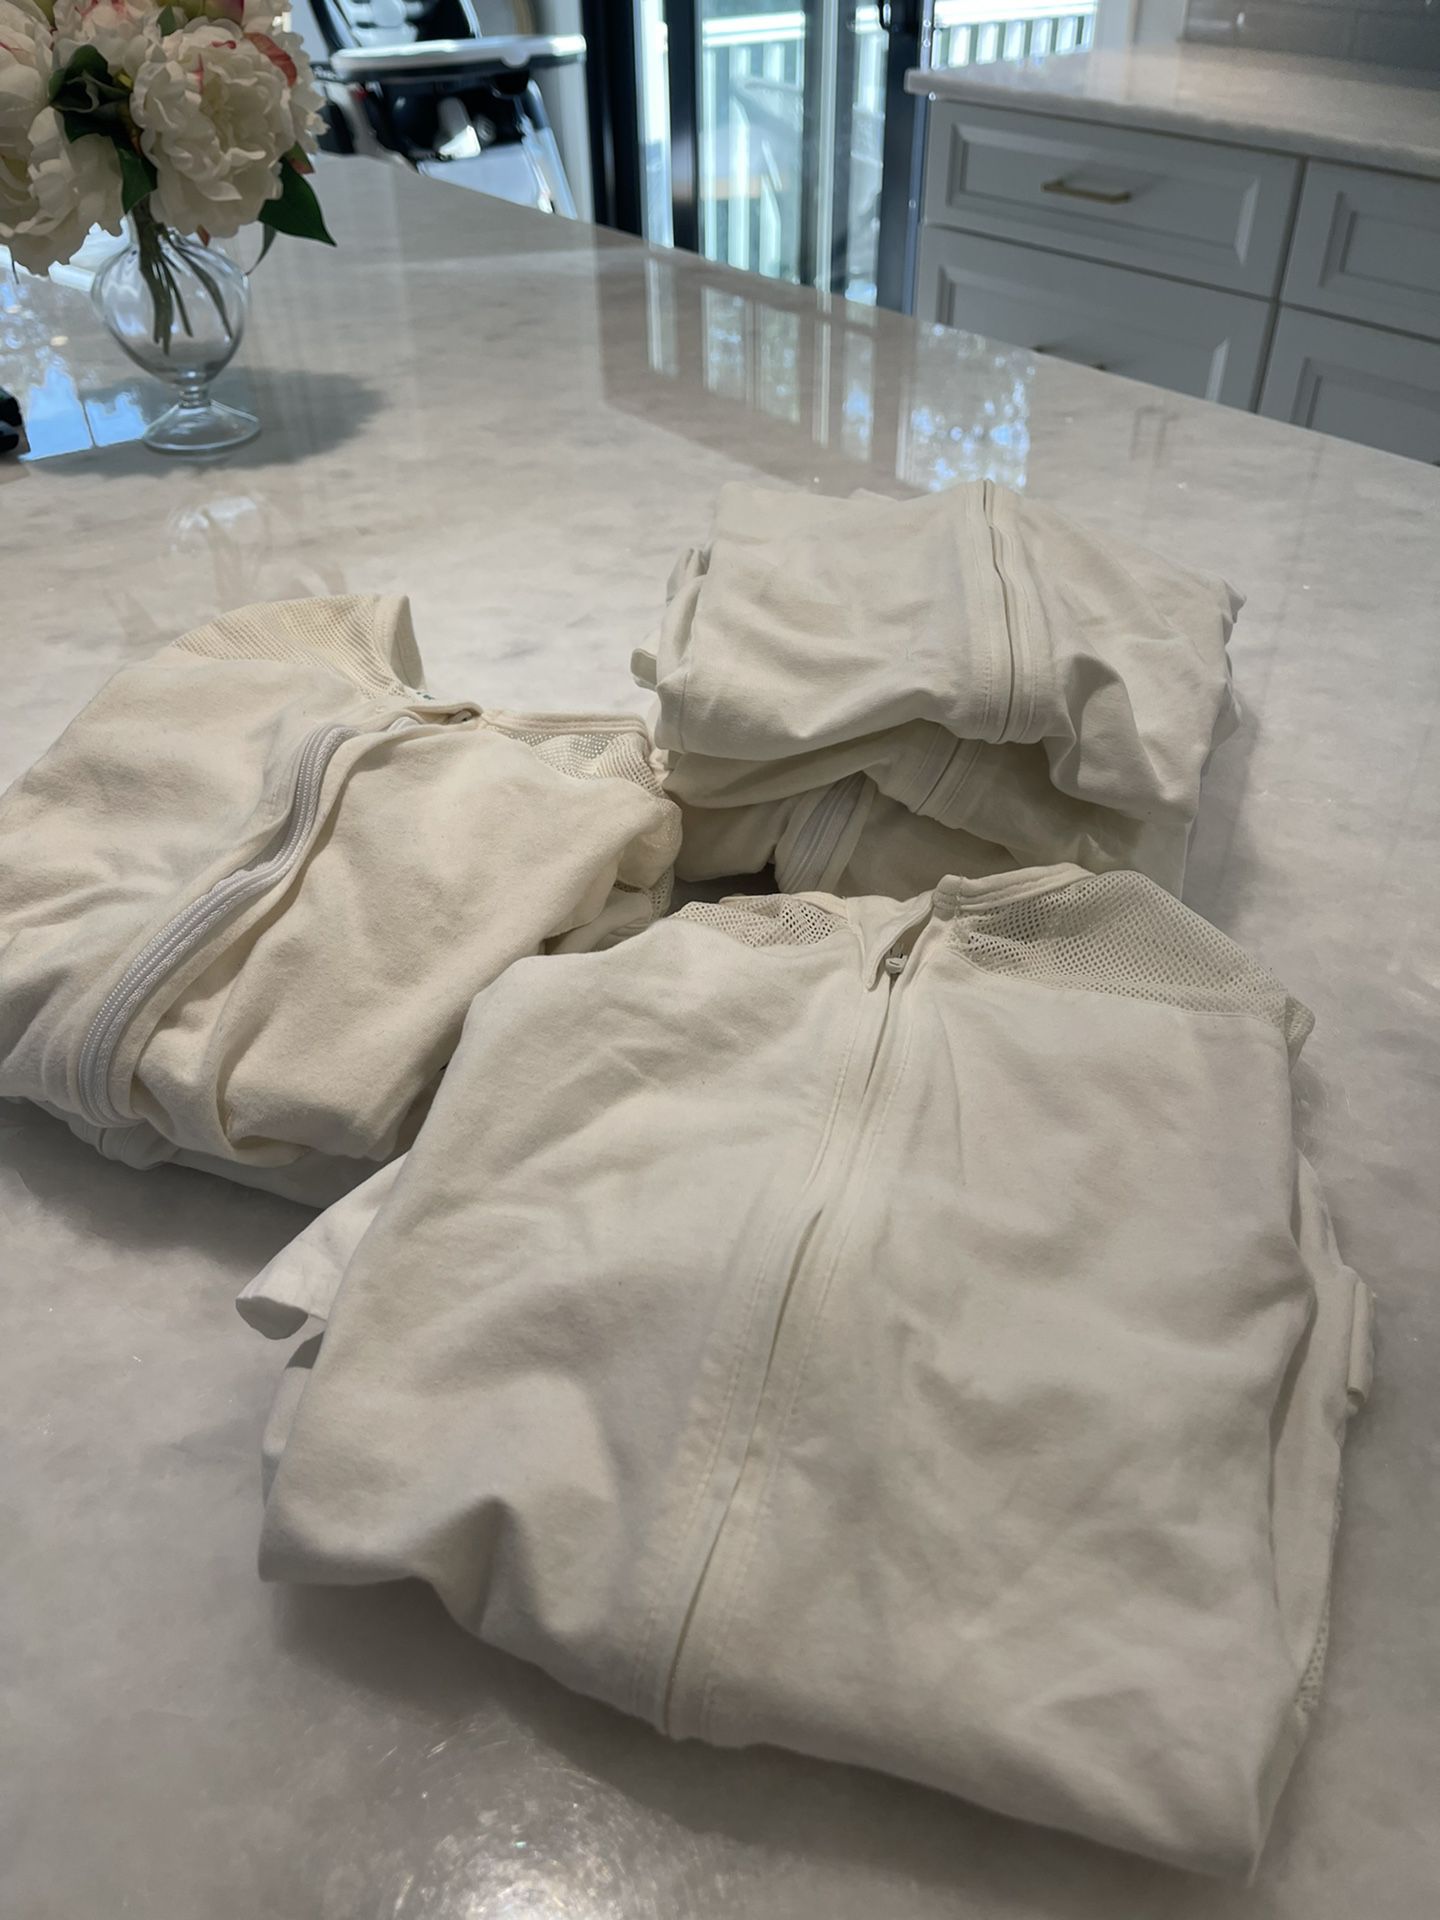 SNOO Sleep sacks - Free 2 Small / 3 Medium / 1 Large 